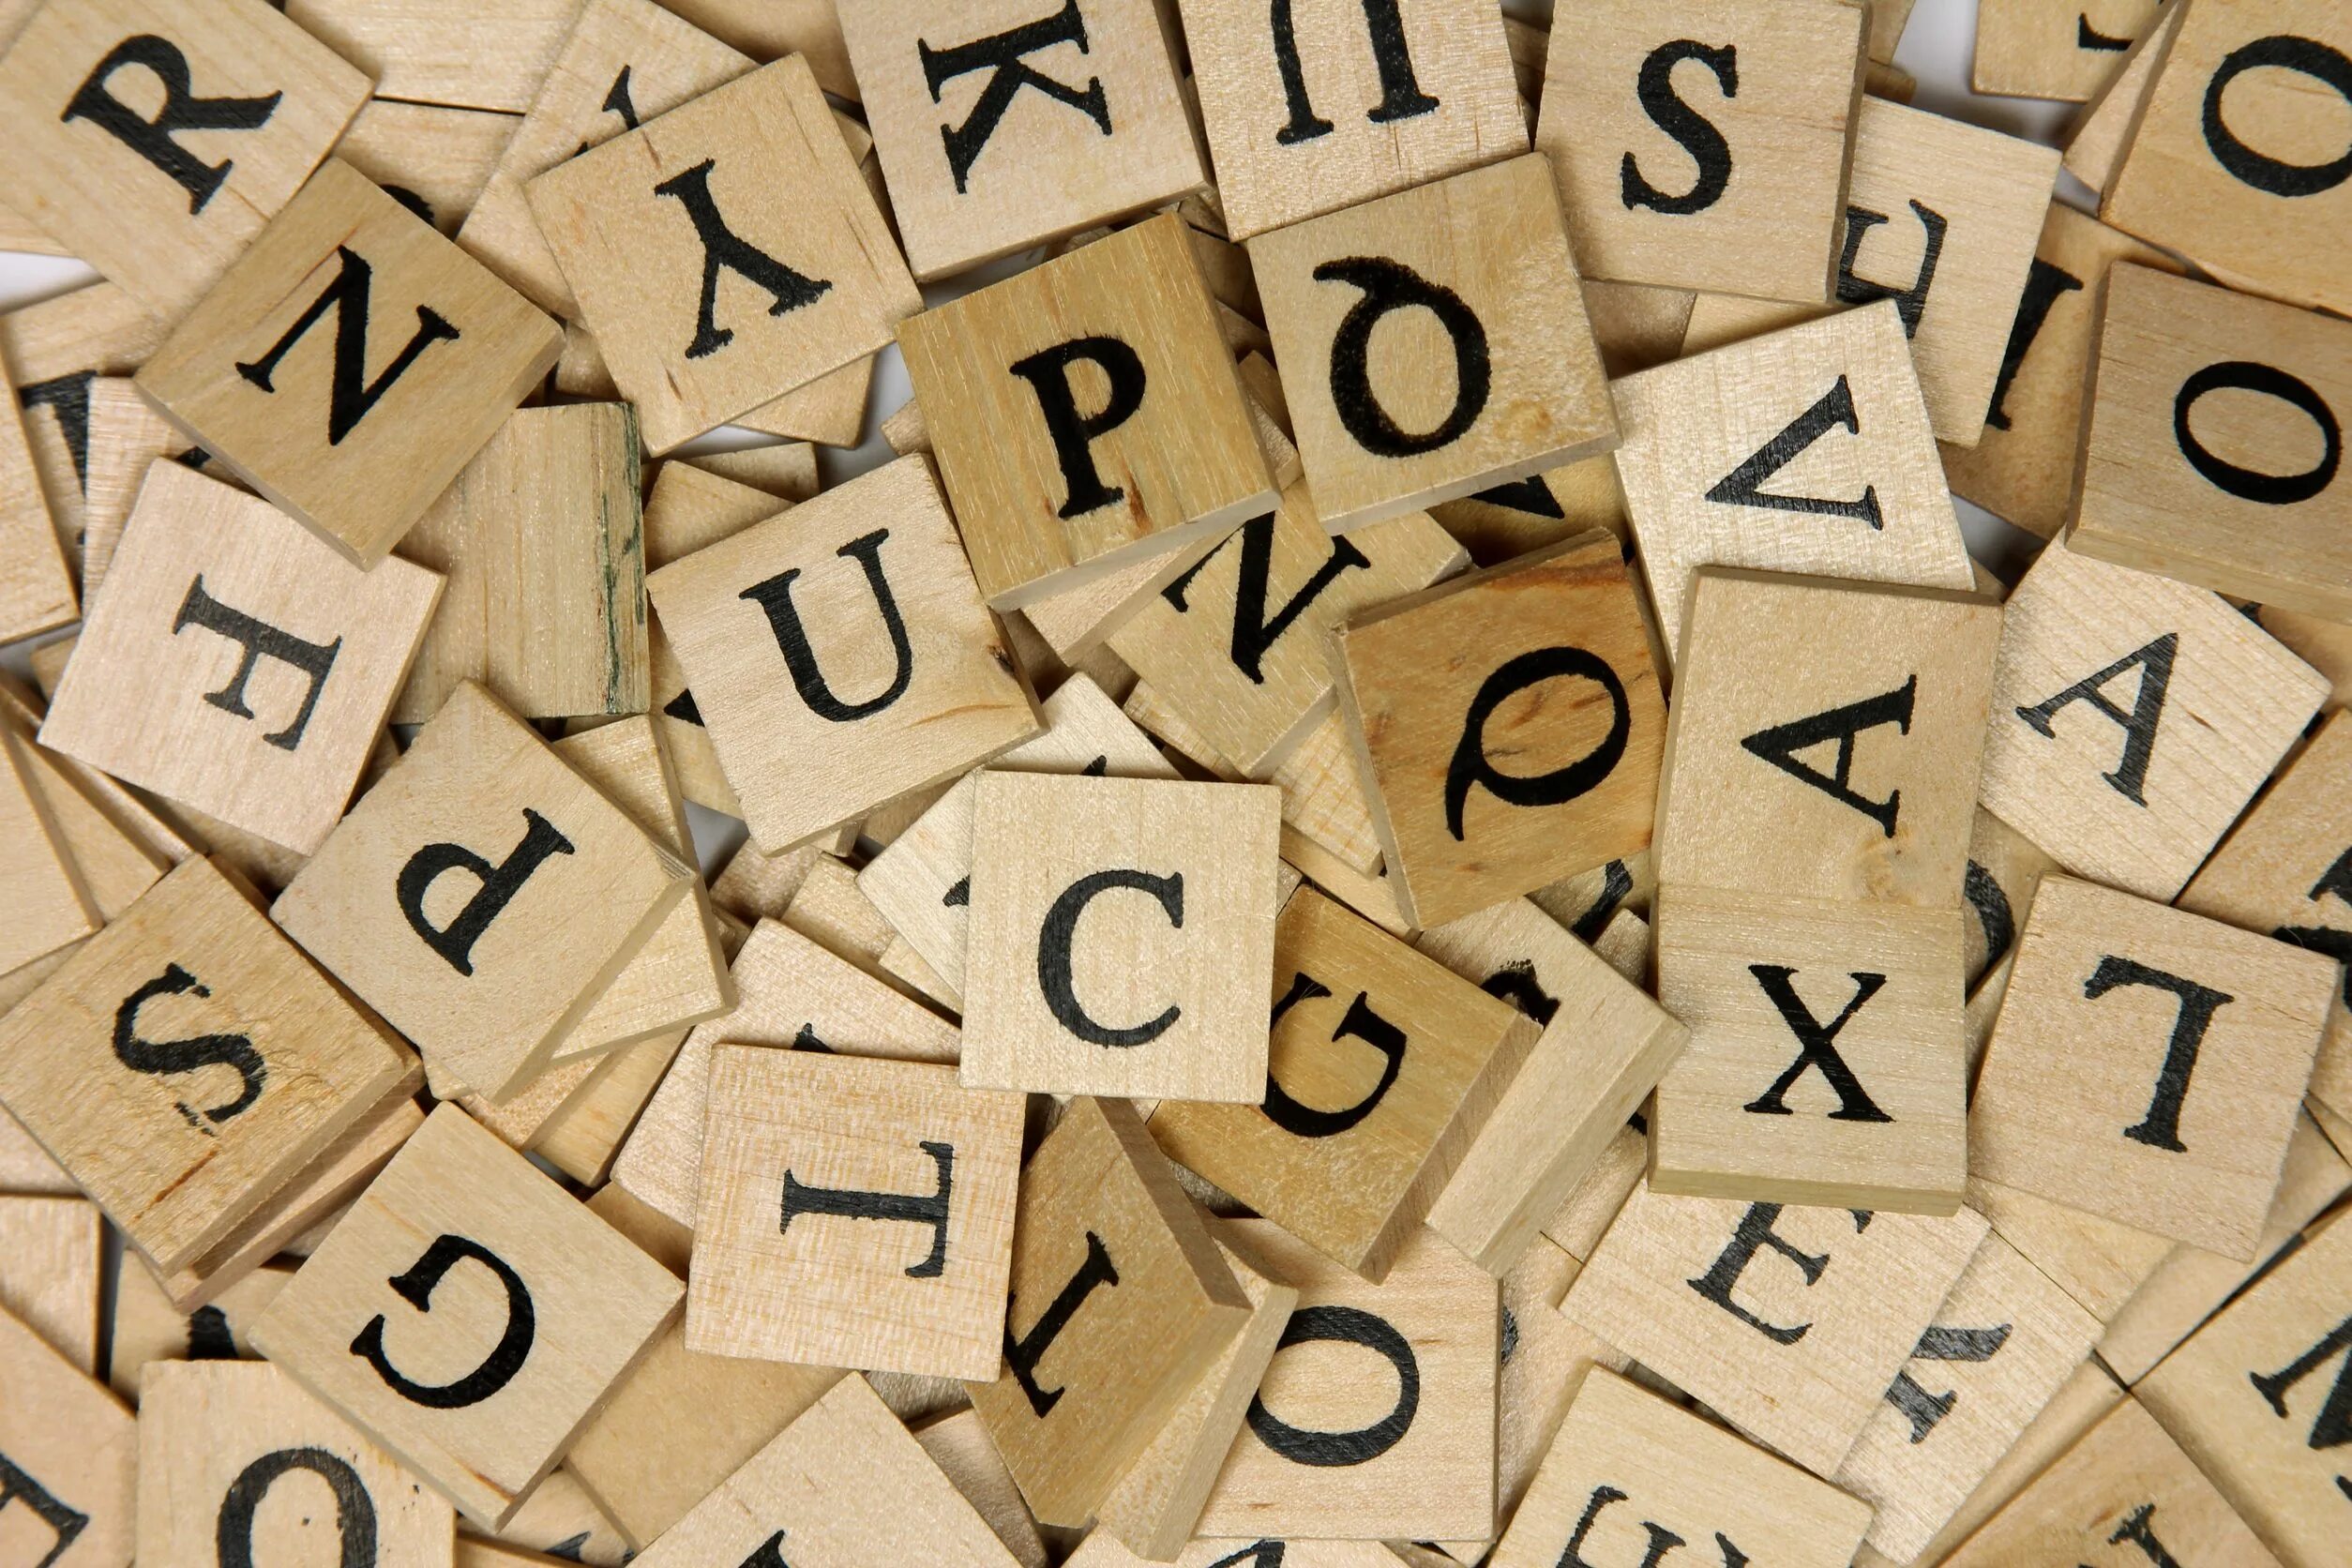 Случайный набор букв. Набор букв для Scrabble. Scrabble букв набор английский. Картинки набор букв книга.